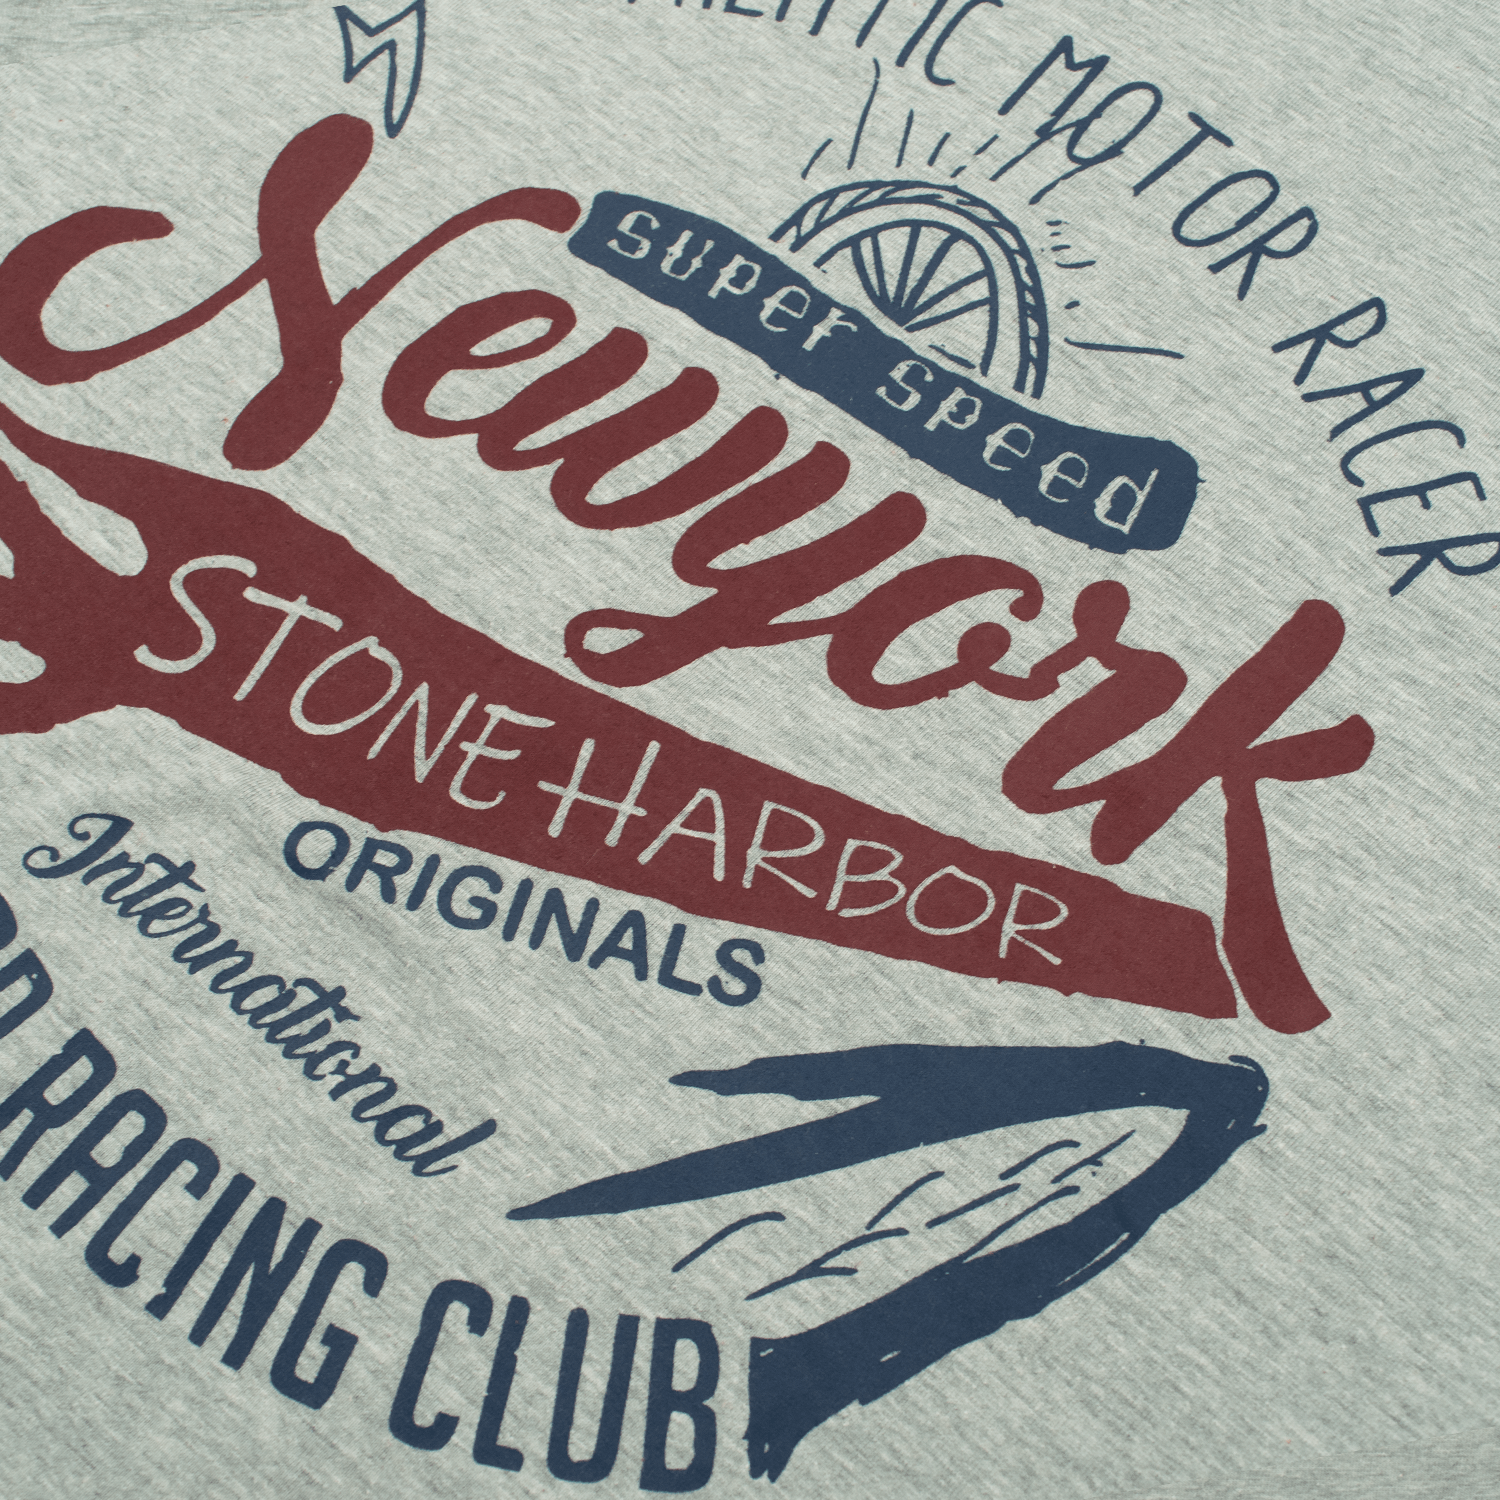 Stone Harbor T-shirts MEN'S AUTHENTIC RACER T-SHIRT